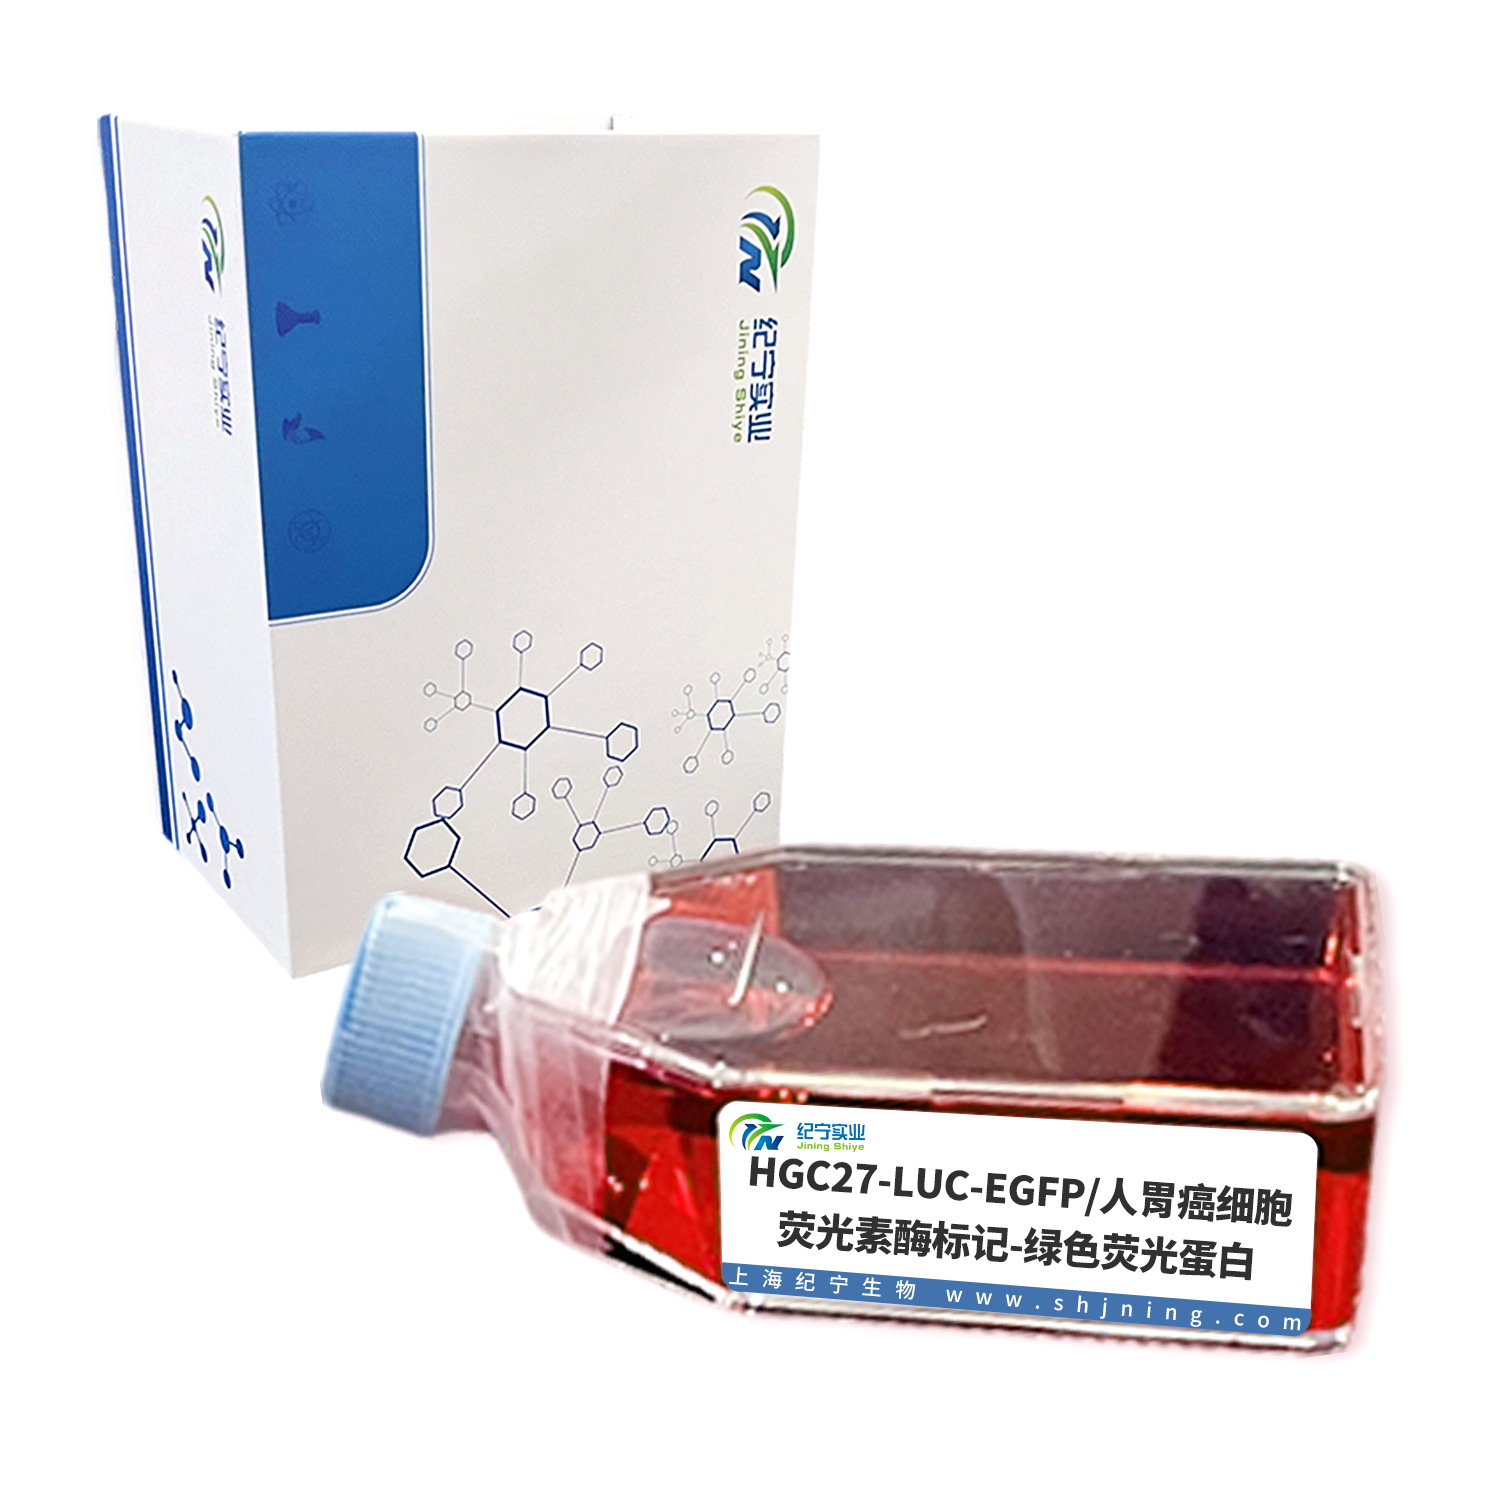 HGC27-LUC-EGFP/人胃癌细胞-荧光素酶标记-绿色荧光蛋白